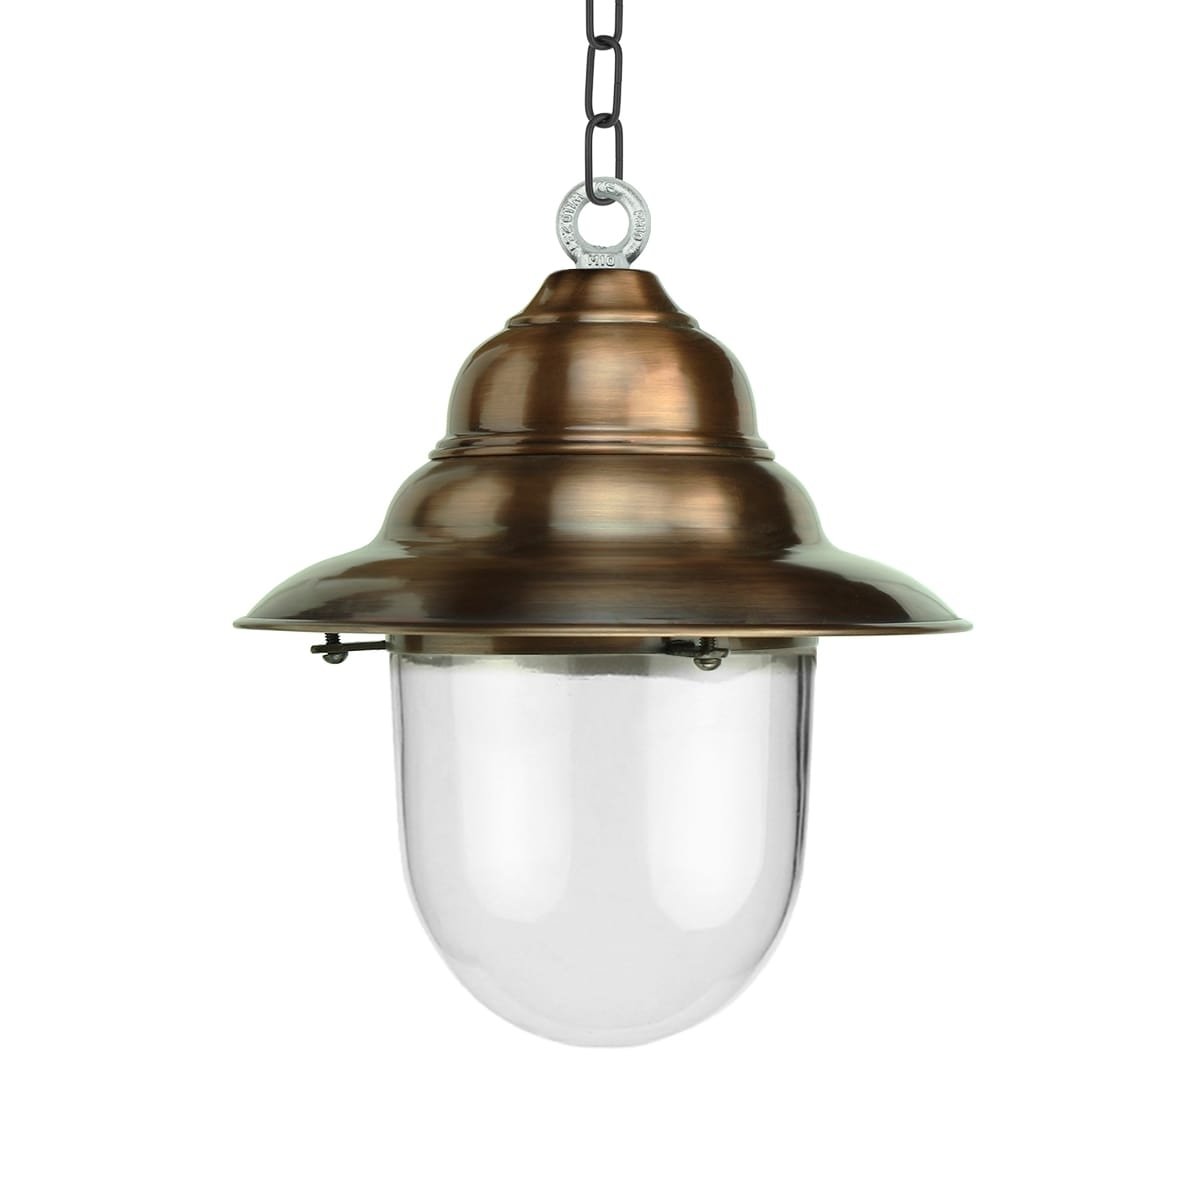 Buitenverlichting Klassiek Landelijk Veranda lamp rustiek Archem koper - 35 cm